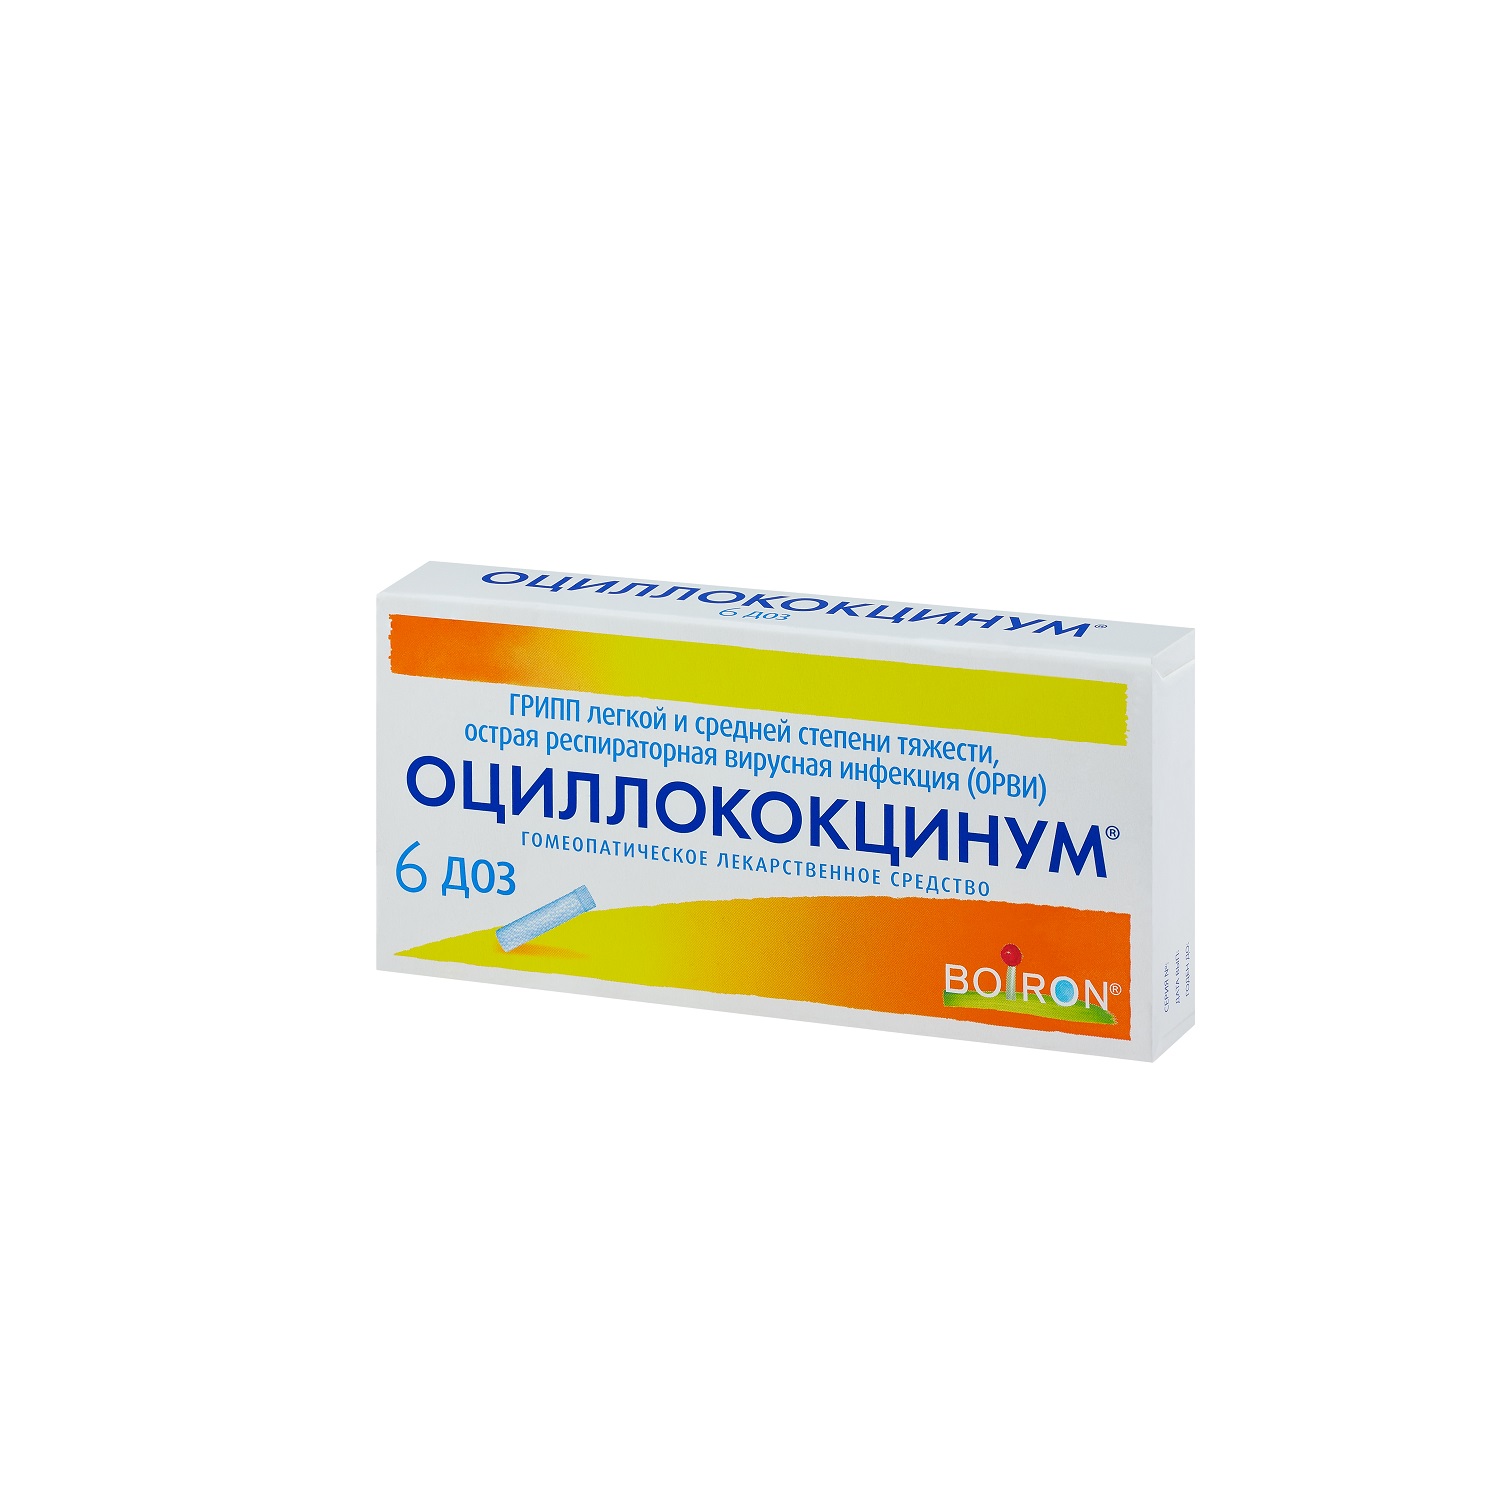 Купить Оциллококцинум гранулы 1 г 1 доз 6 шт., Boiron